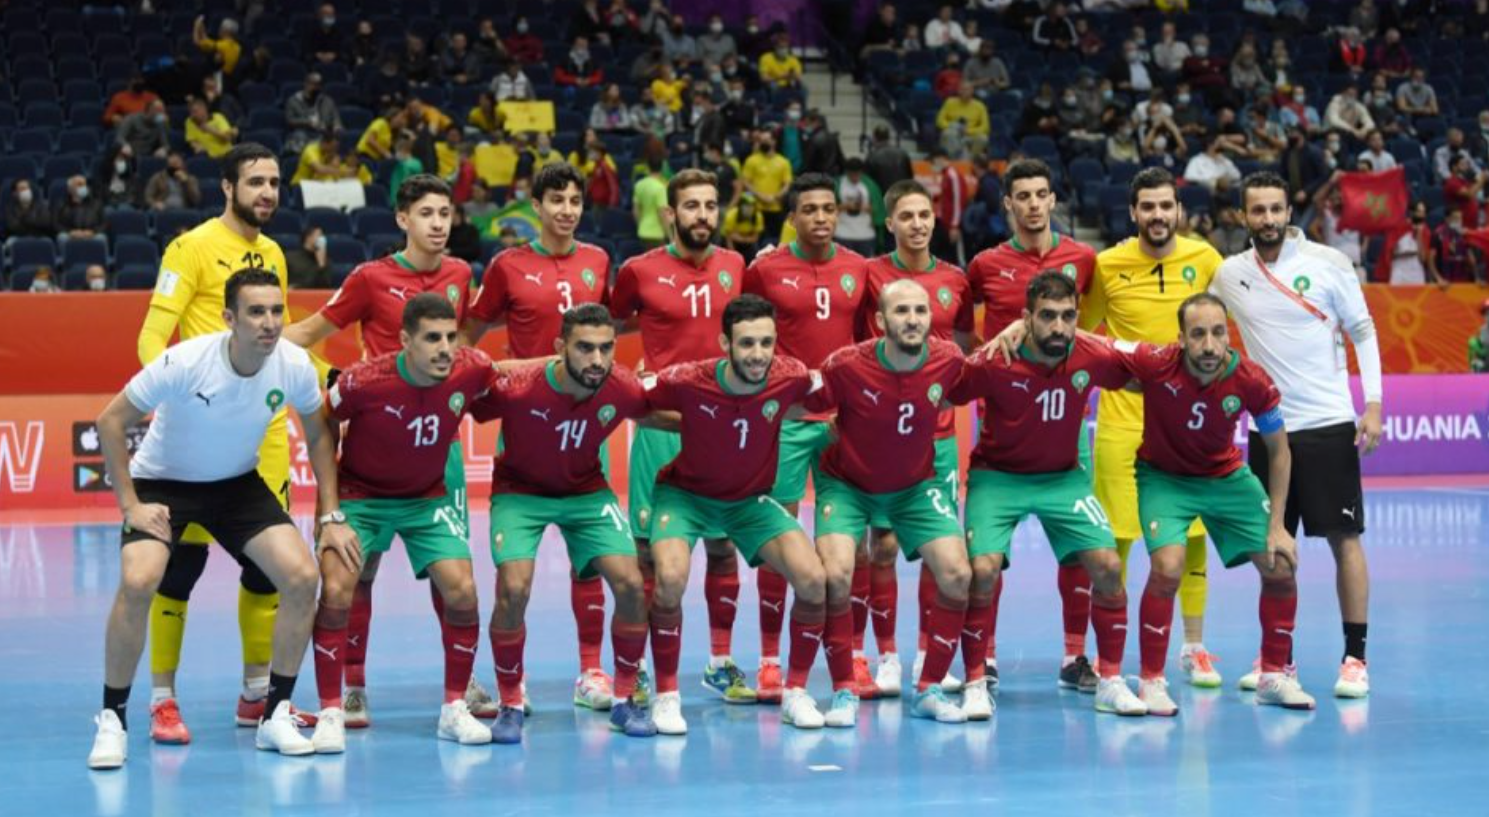 المنتخب الوطني لكرة القدم للفوتسال, المنتخب المغربي للفوتسال, منحة مالية للمنتخب الوطني, كرة القدم داخل القاعة